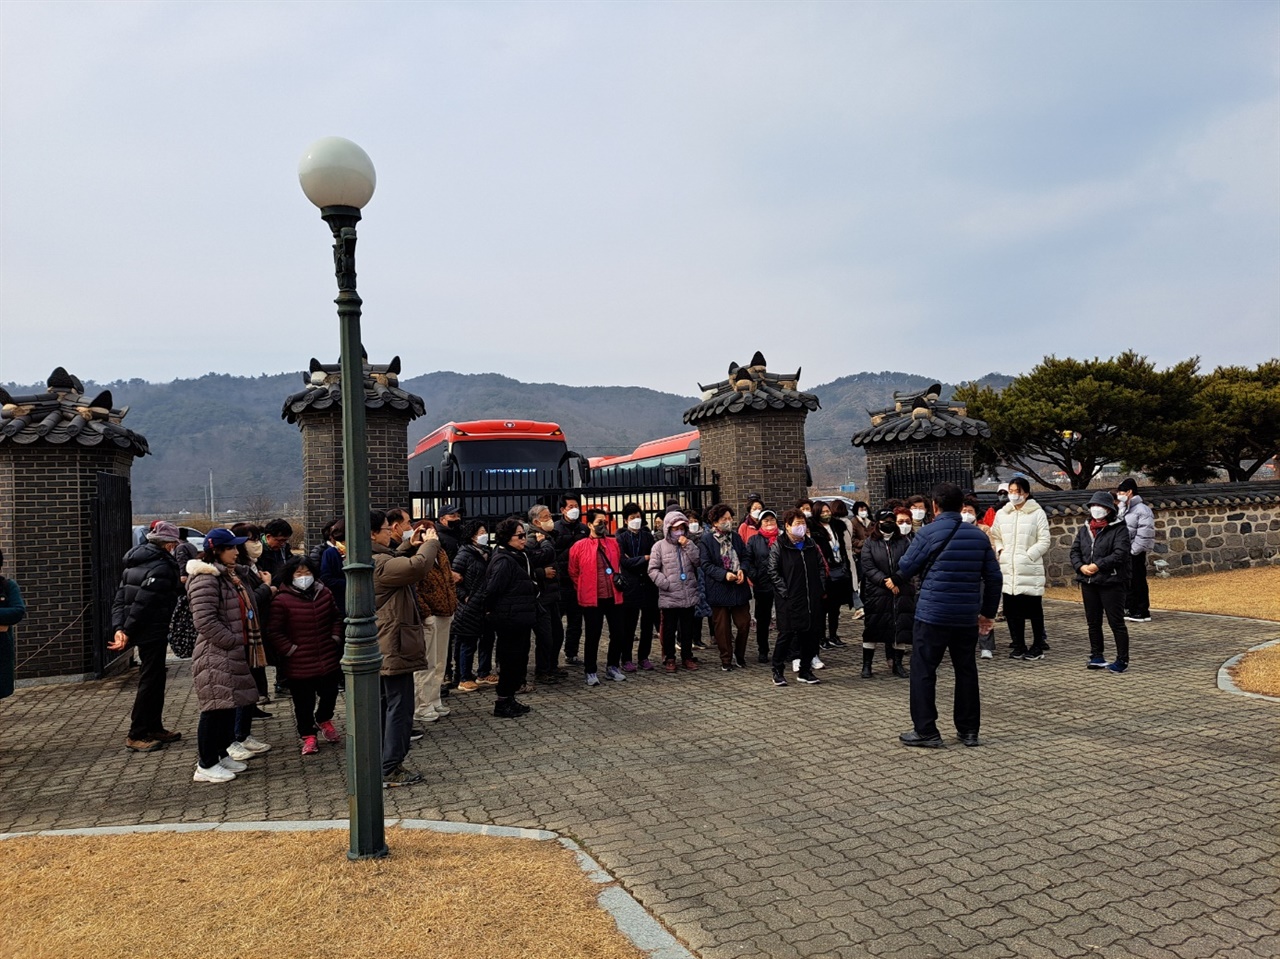 3.1운동 제104주년인 지난 1일, 관광객들이 백야 김좌진 생가를 찾아 3.1운동 정신을 되새겼다.